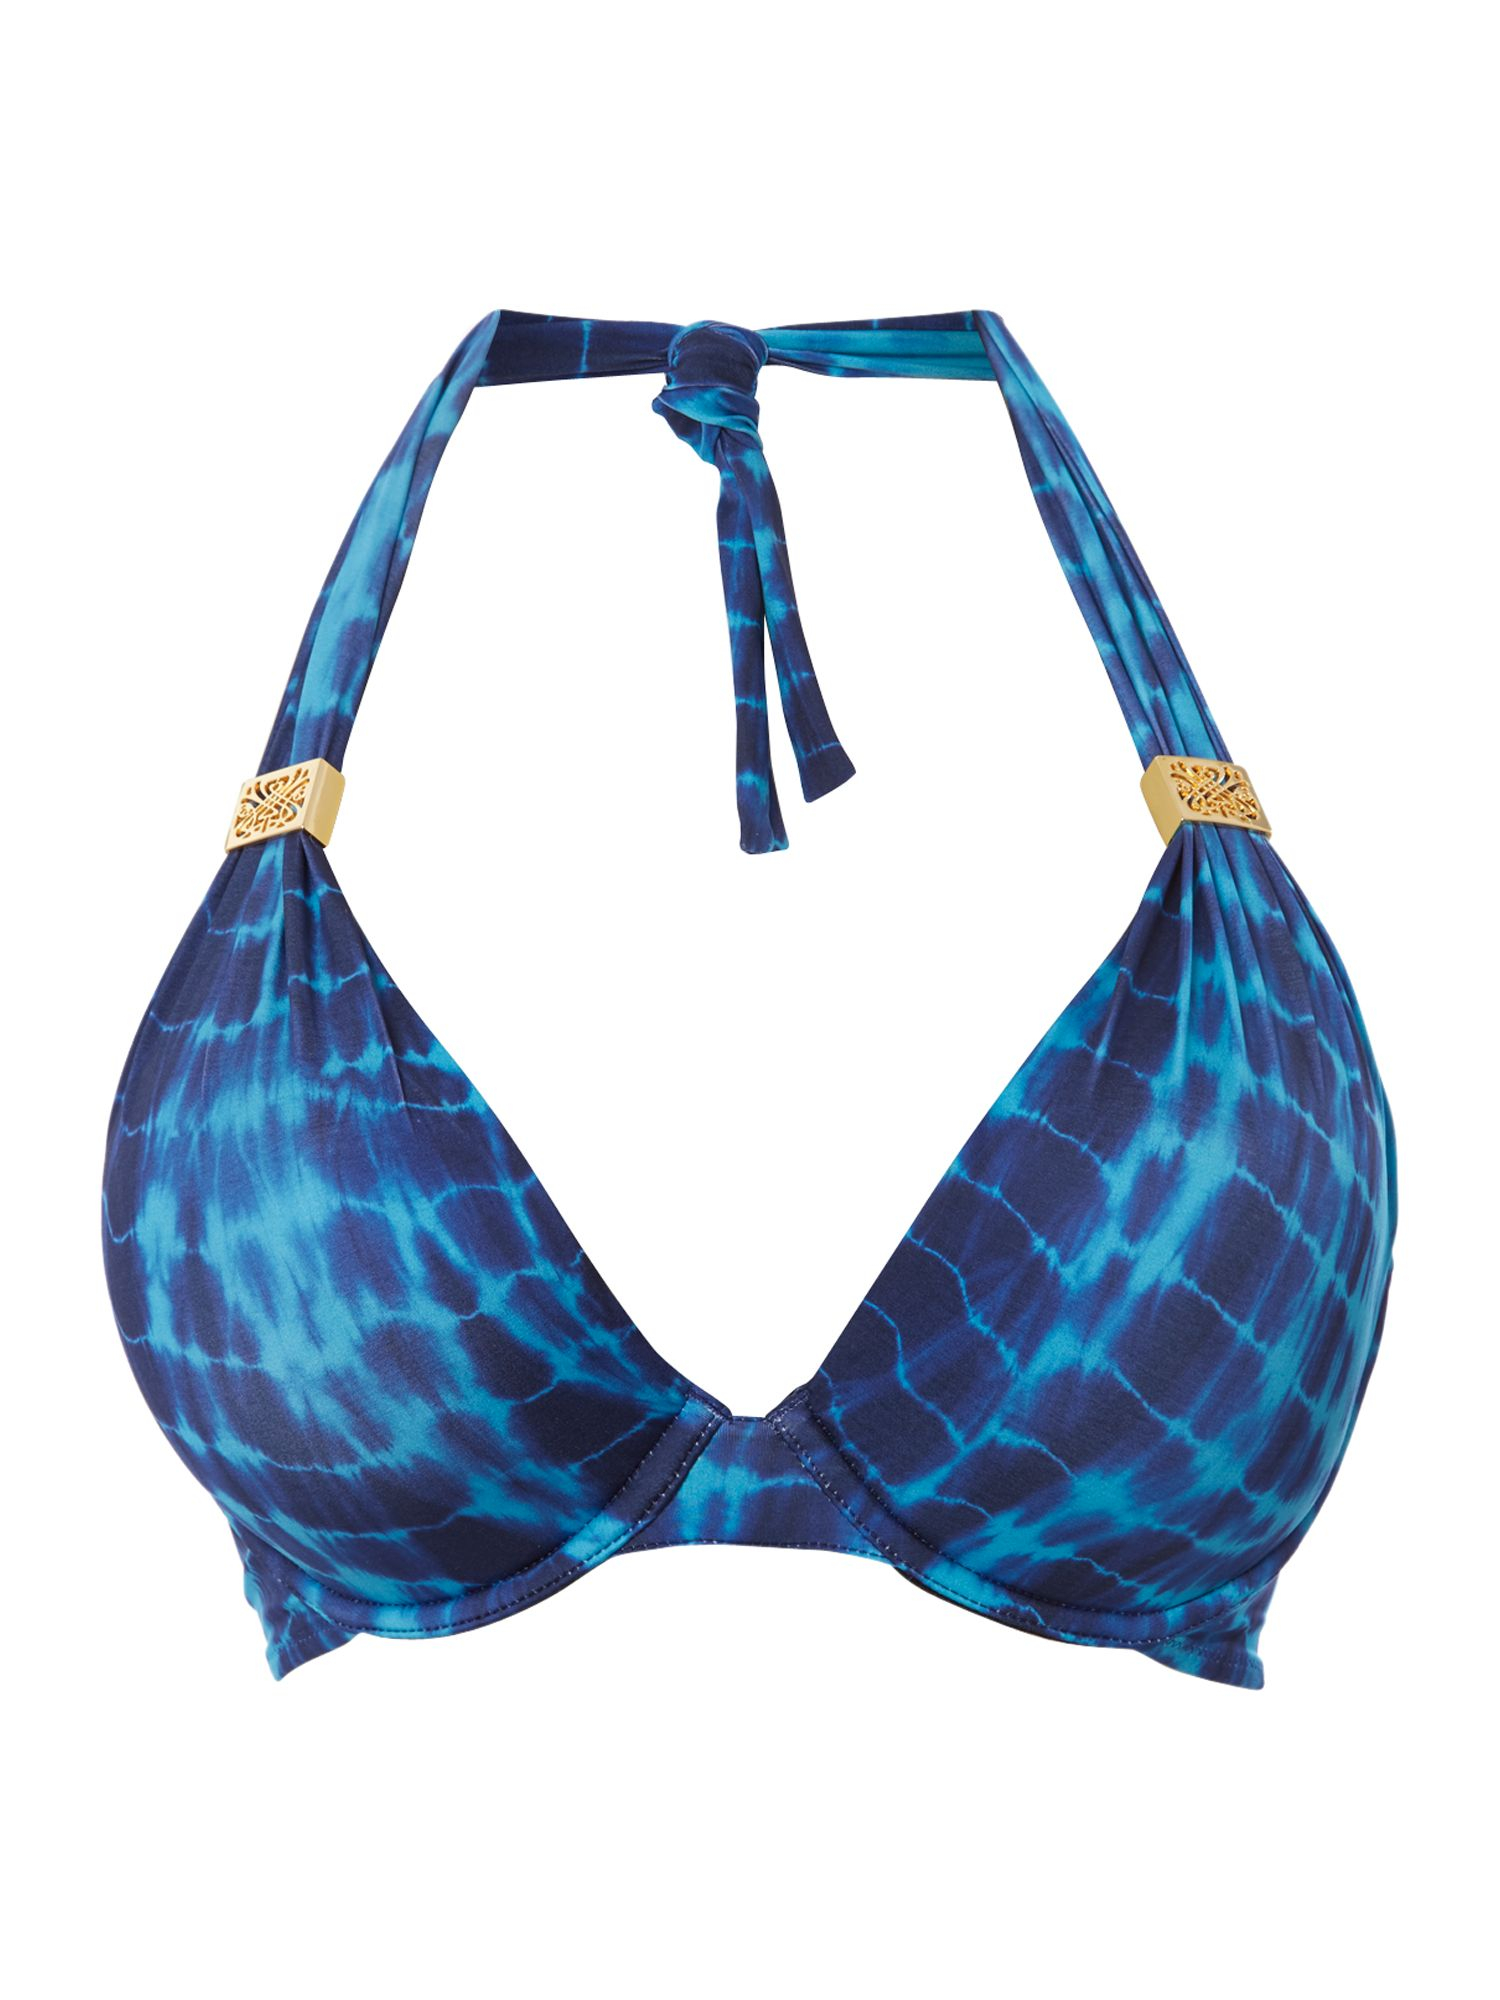 Biba Tie Dye Cup Size Bikini Top in Blue (Multi-Coloured) | Lyst